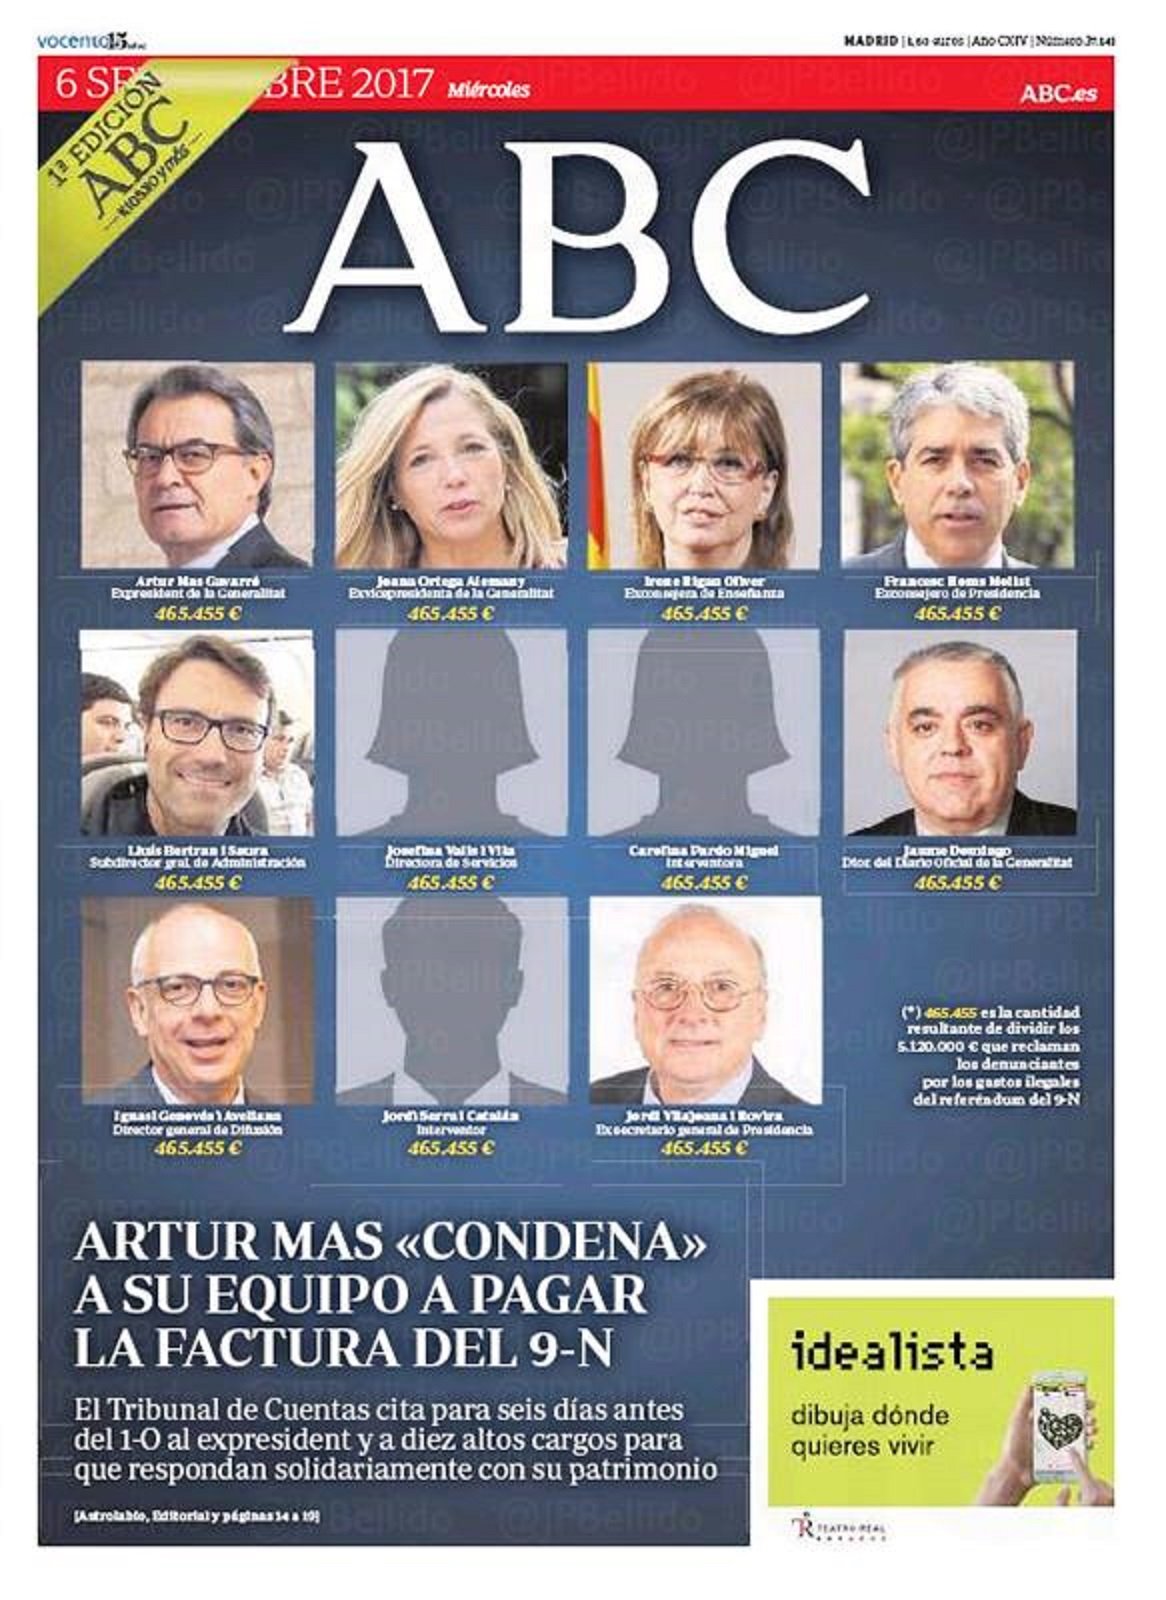 La tropelía del 'ABC' con una portada infame